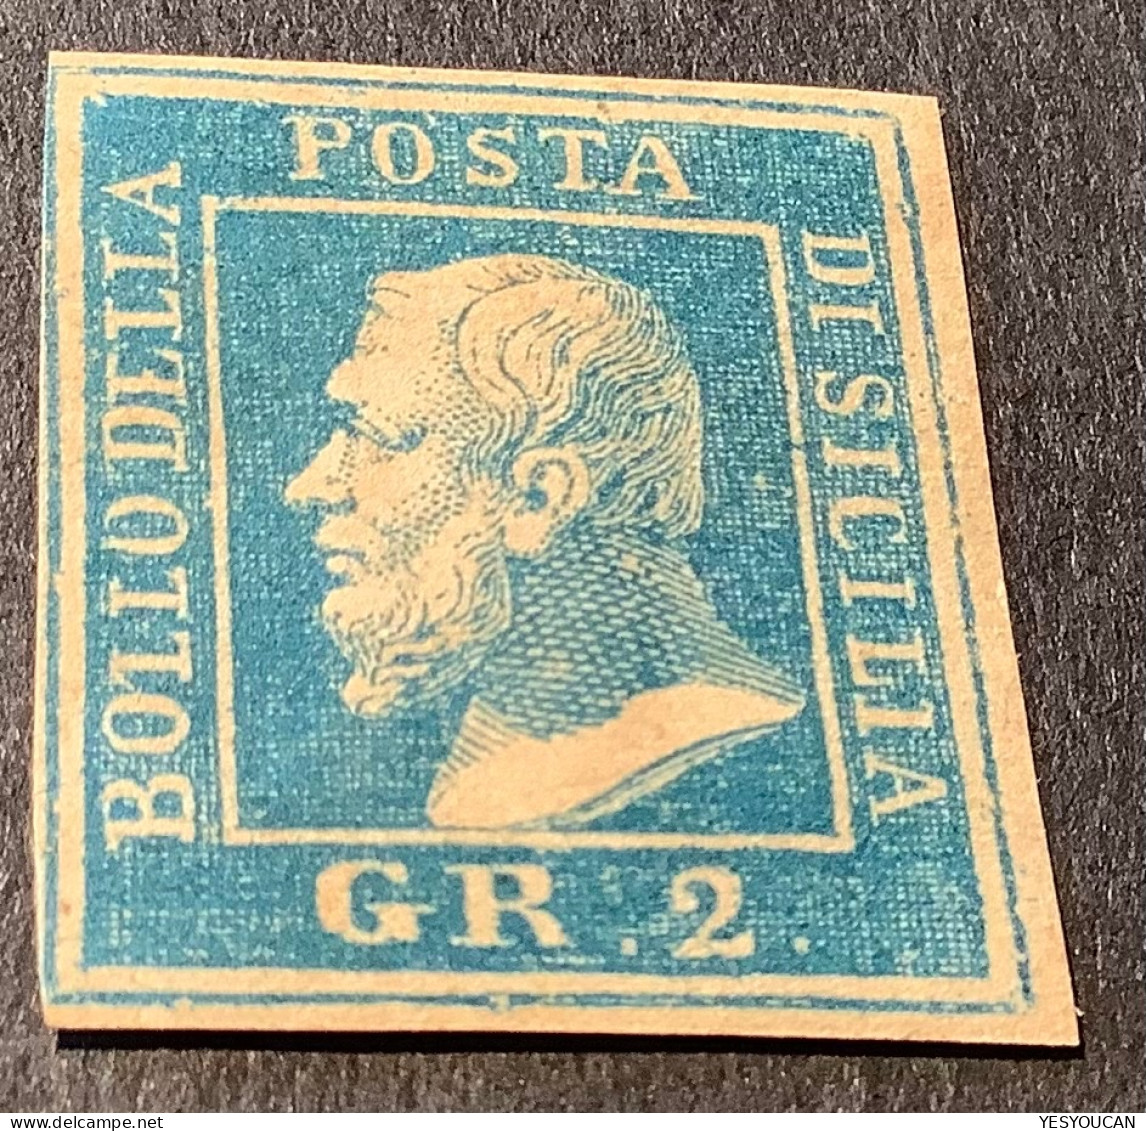 Sicilia 1859 Rare Lithographic Forgery (falso) Or Essay (saggi)? (Sicily Sicile Italy Italia Italie Essai/faux ? - Sicilië